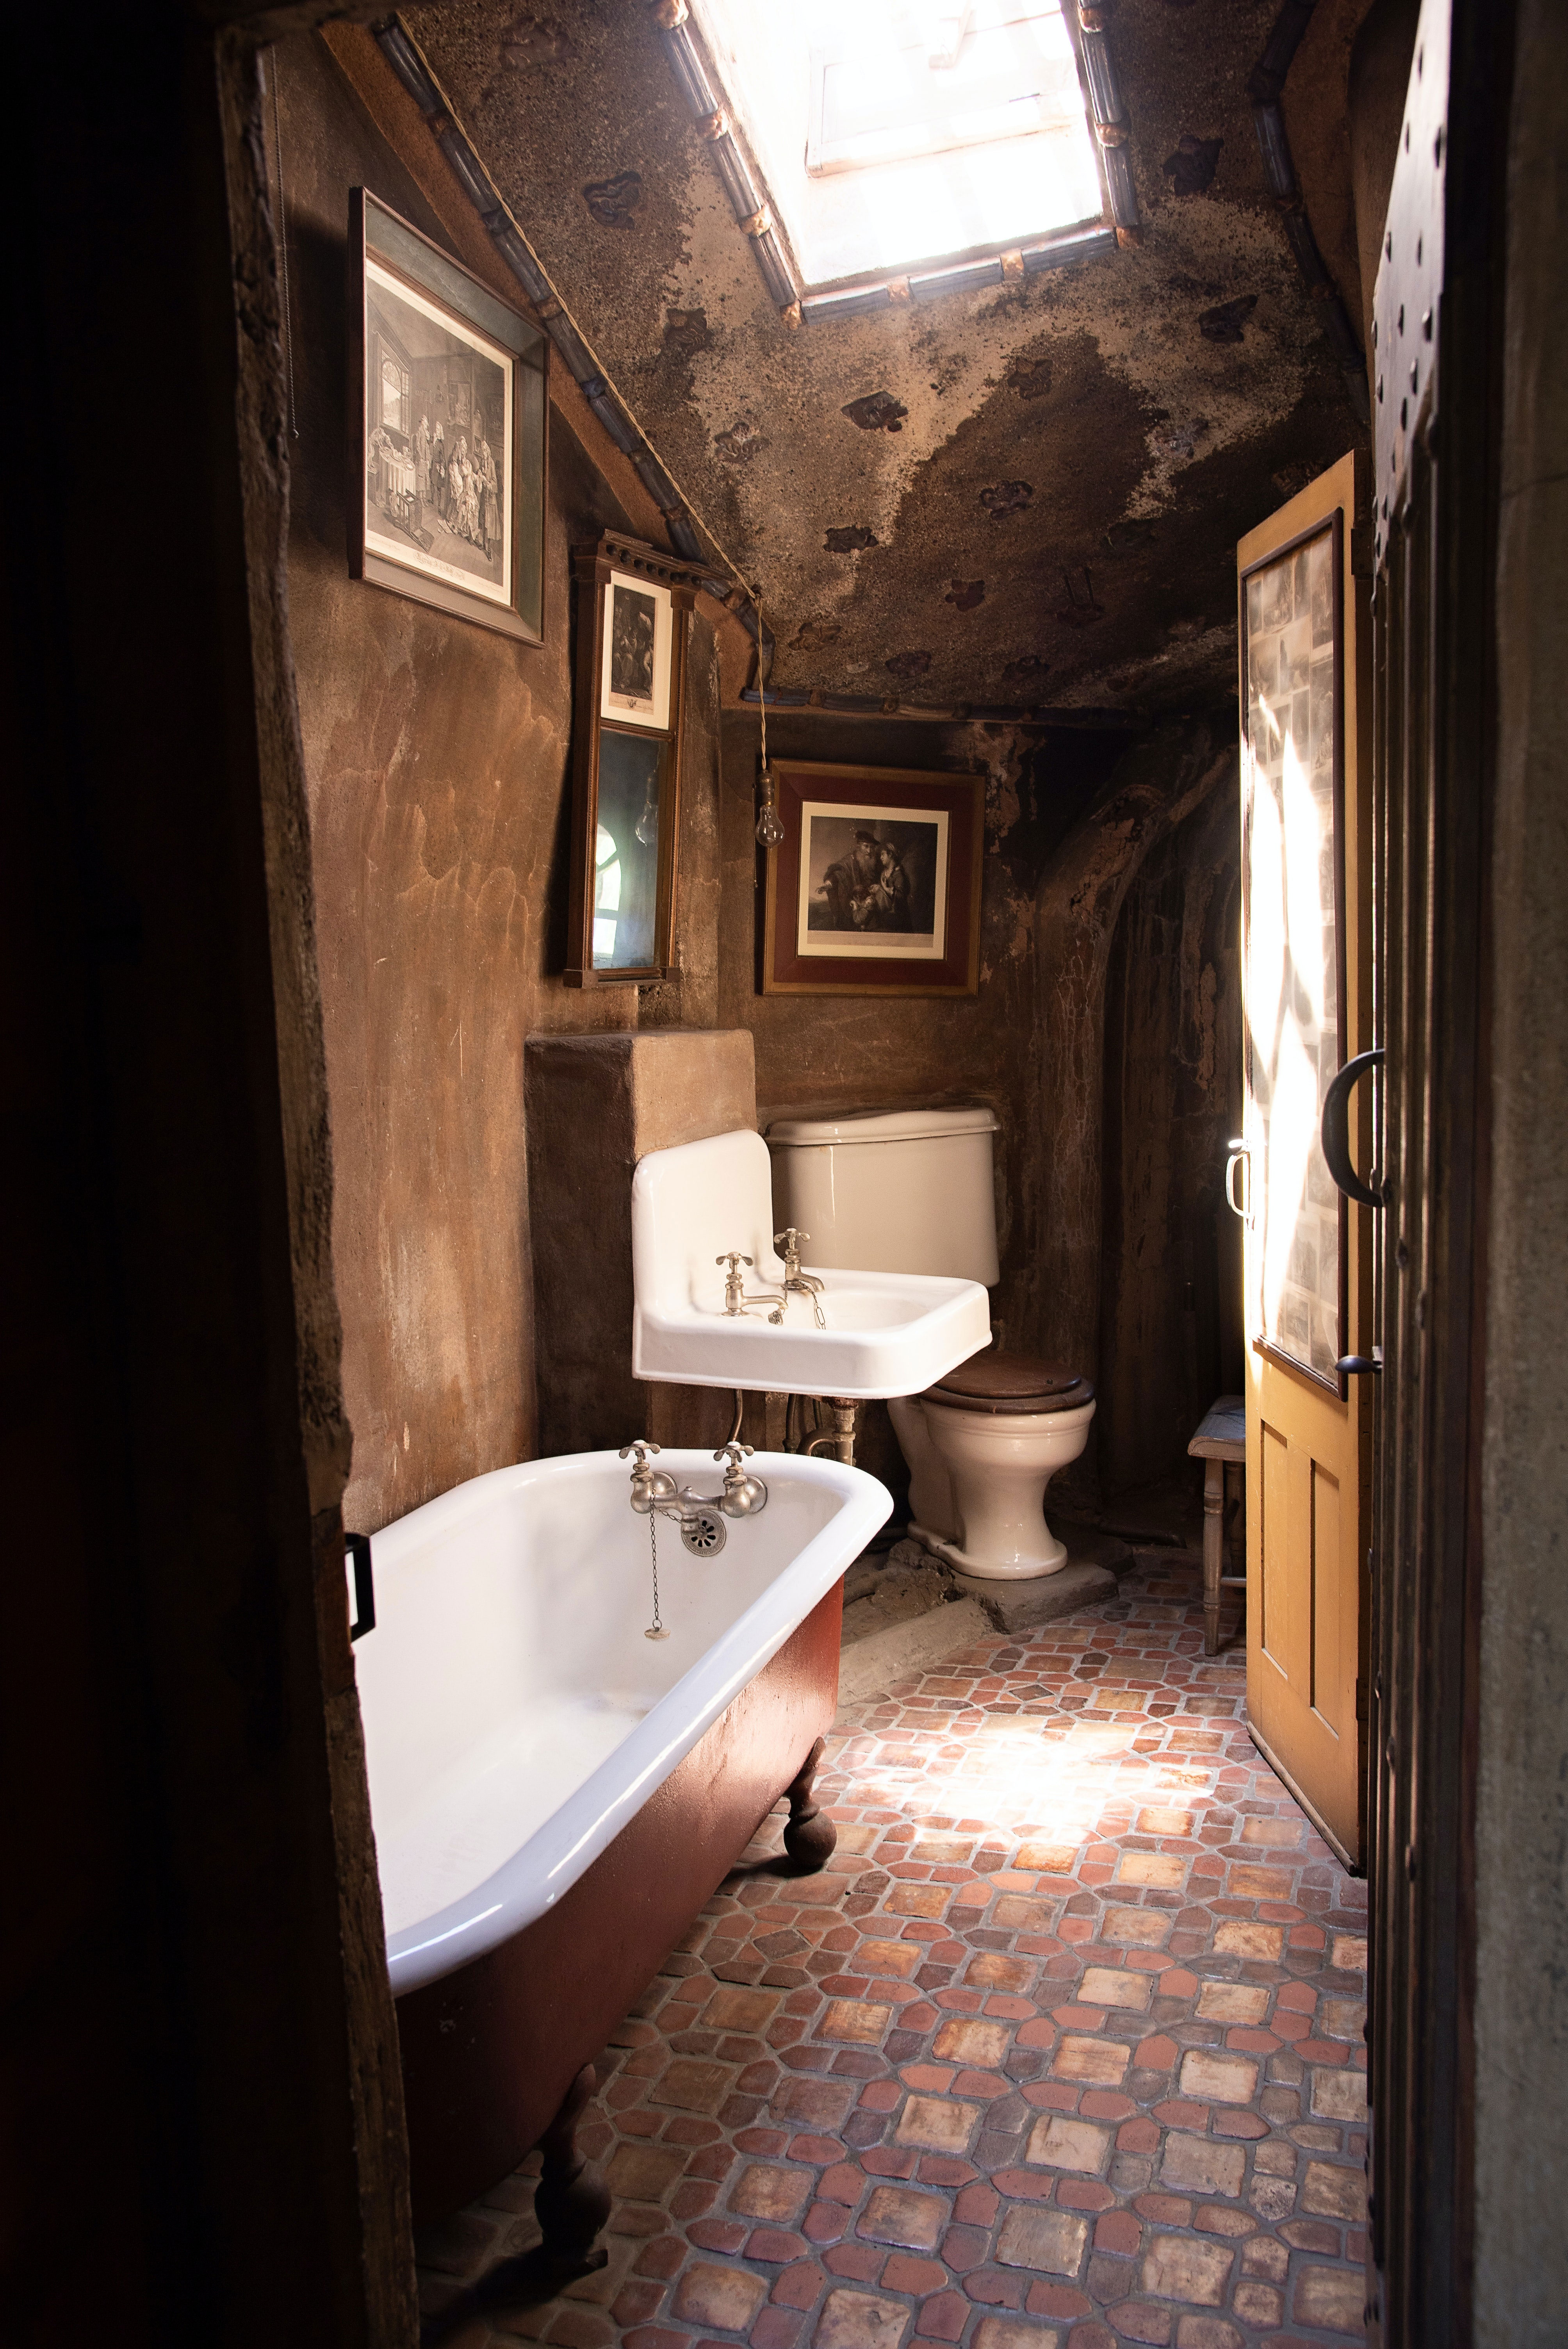 Clawfoot tub in a rustic bathroom.